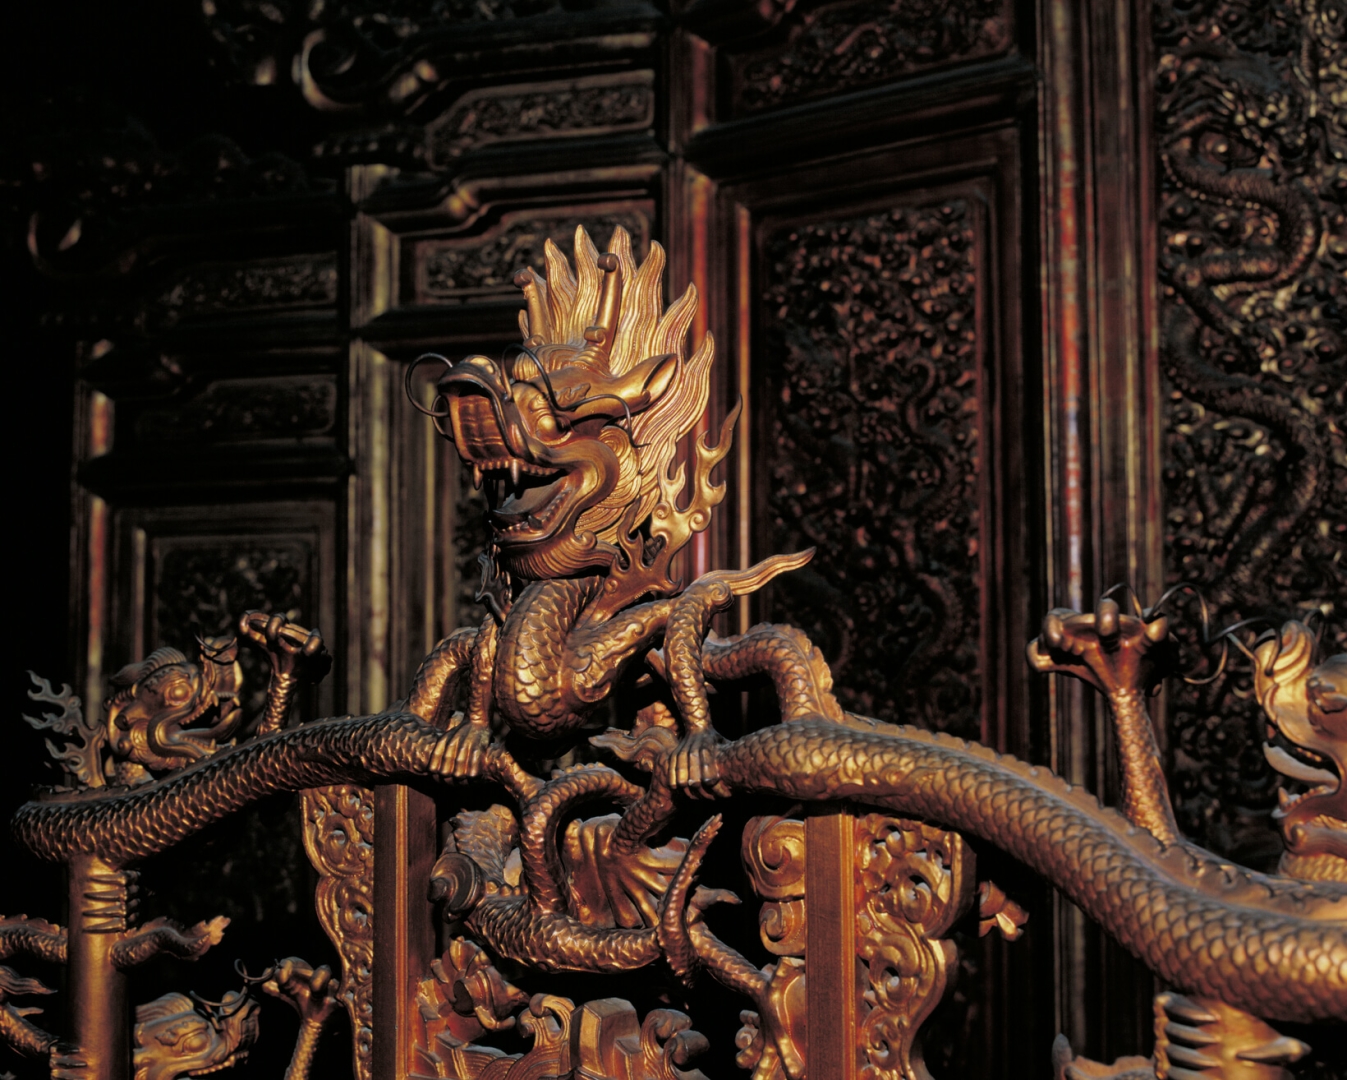 太和殿内の盤龍金柱と太和殿の内観――宝座の龍頭